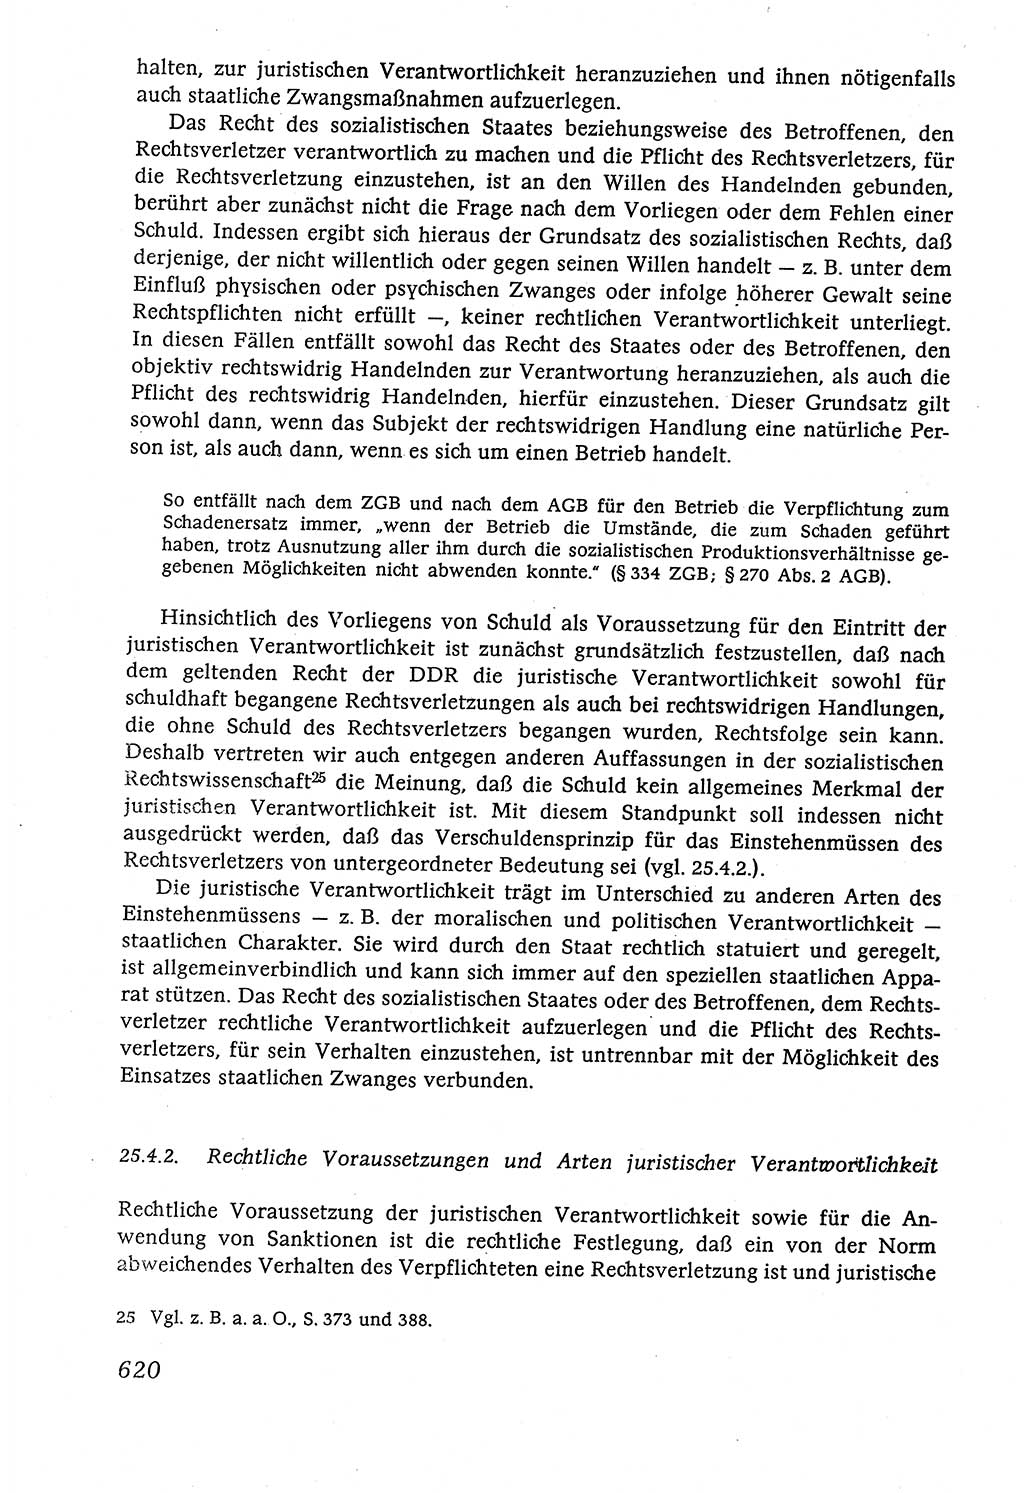 Marxistisch-leninistische (ML) Staats- und Rechtstheorie [Deutsche Demokratische Republik (DDR)], Lehrbuch 1980, Seite 620 (ML St.-R.-Th. DDR Lb. 1980, S. 620)